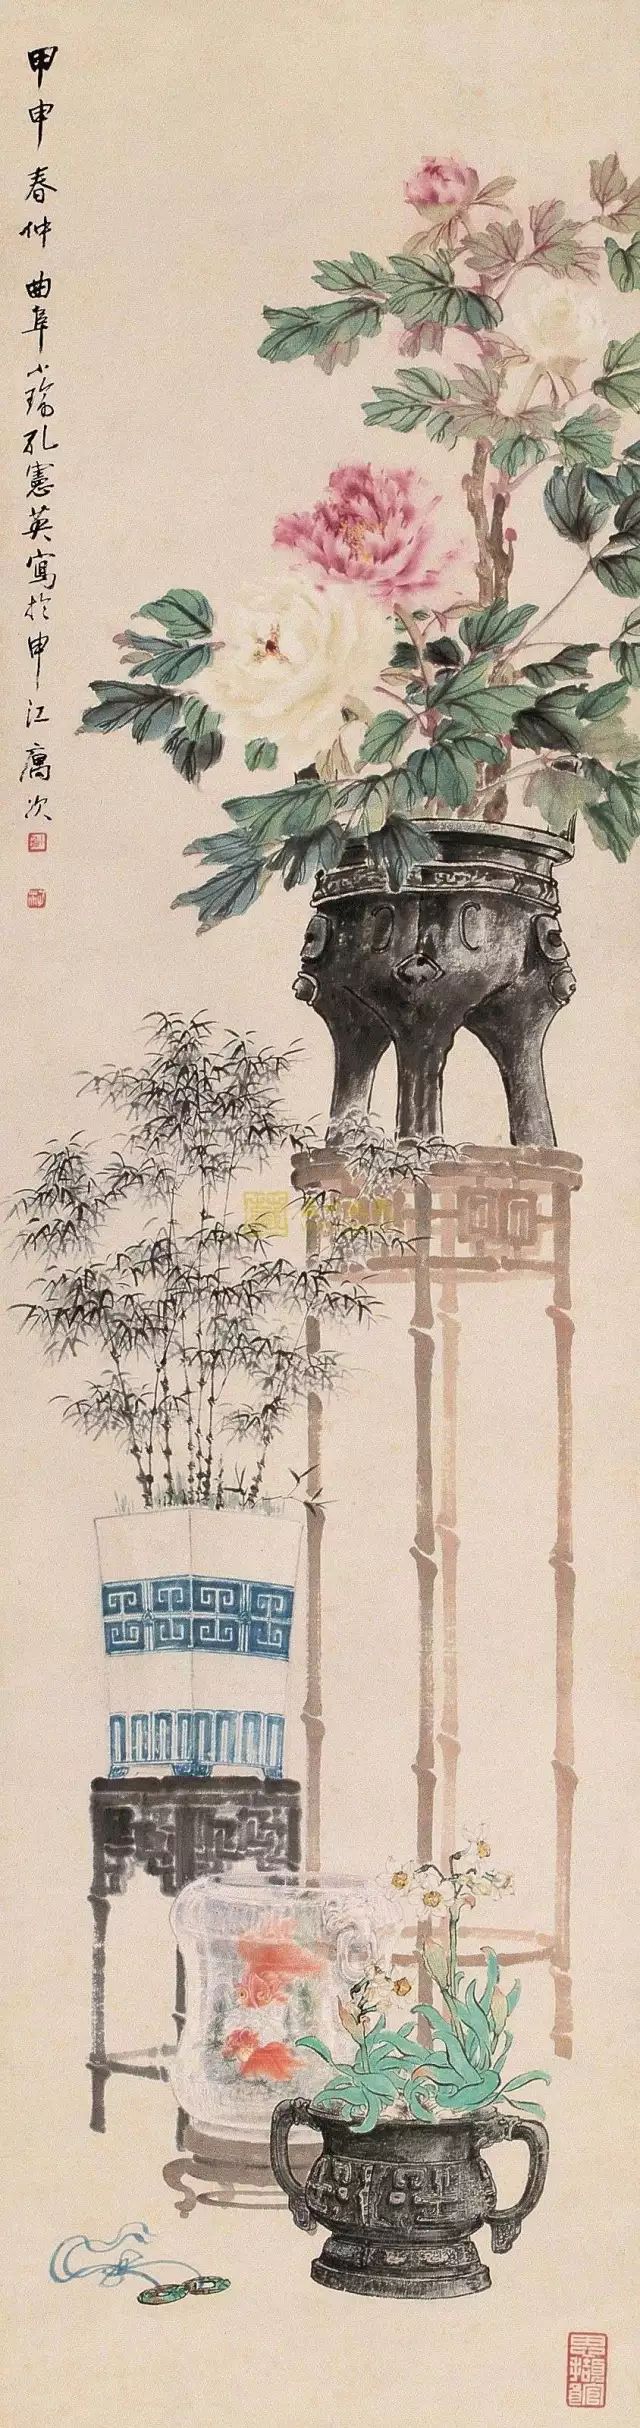 丹青妙笔|孔小瑜与博古画(130幅清晰大图)